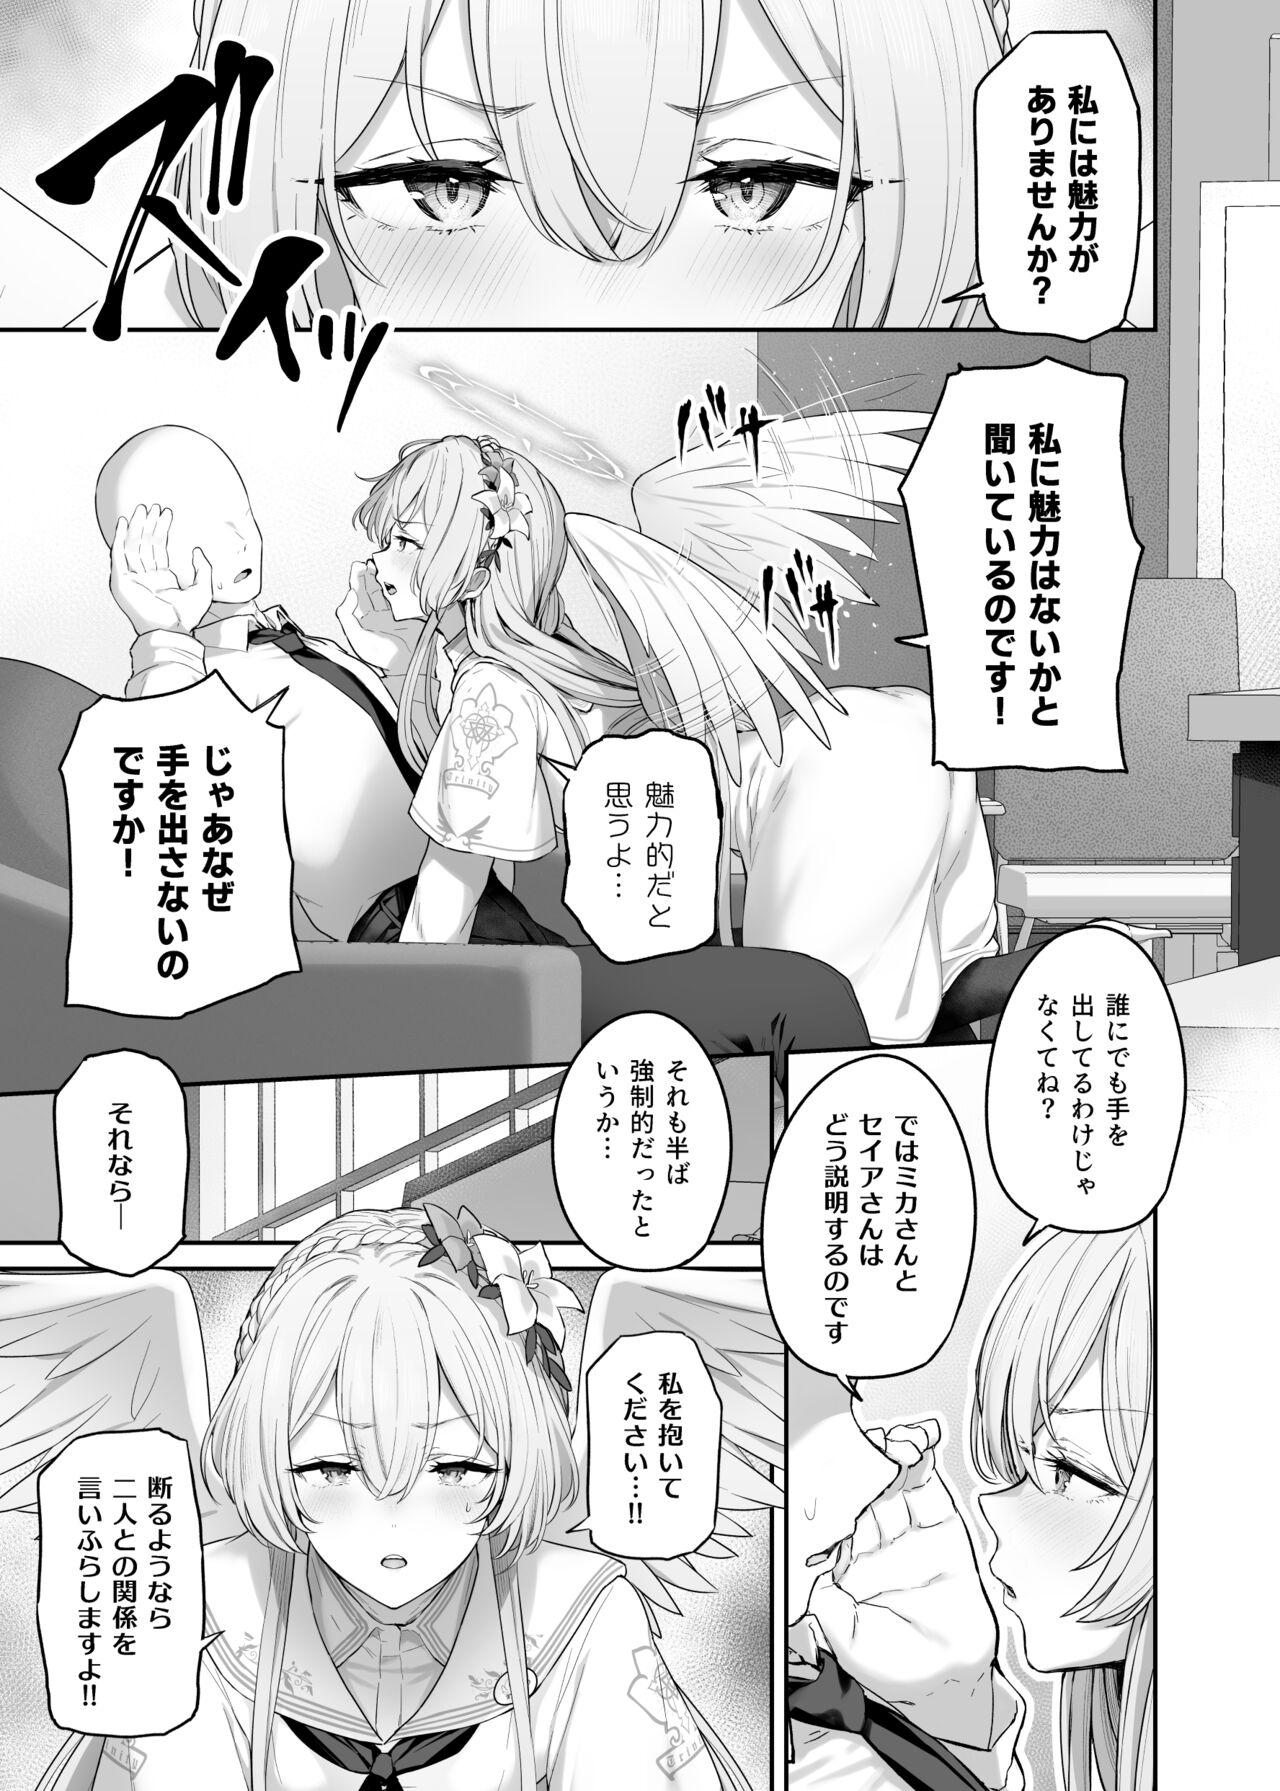 Woman Fucking Kirifuji Nagisa Shinchoku 1-2 - Blue archive Gay Medic - Page 3